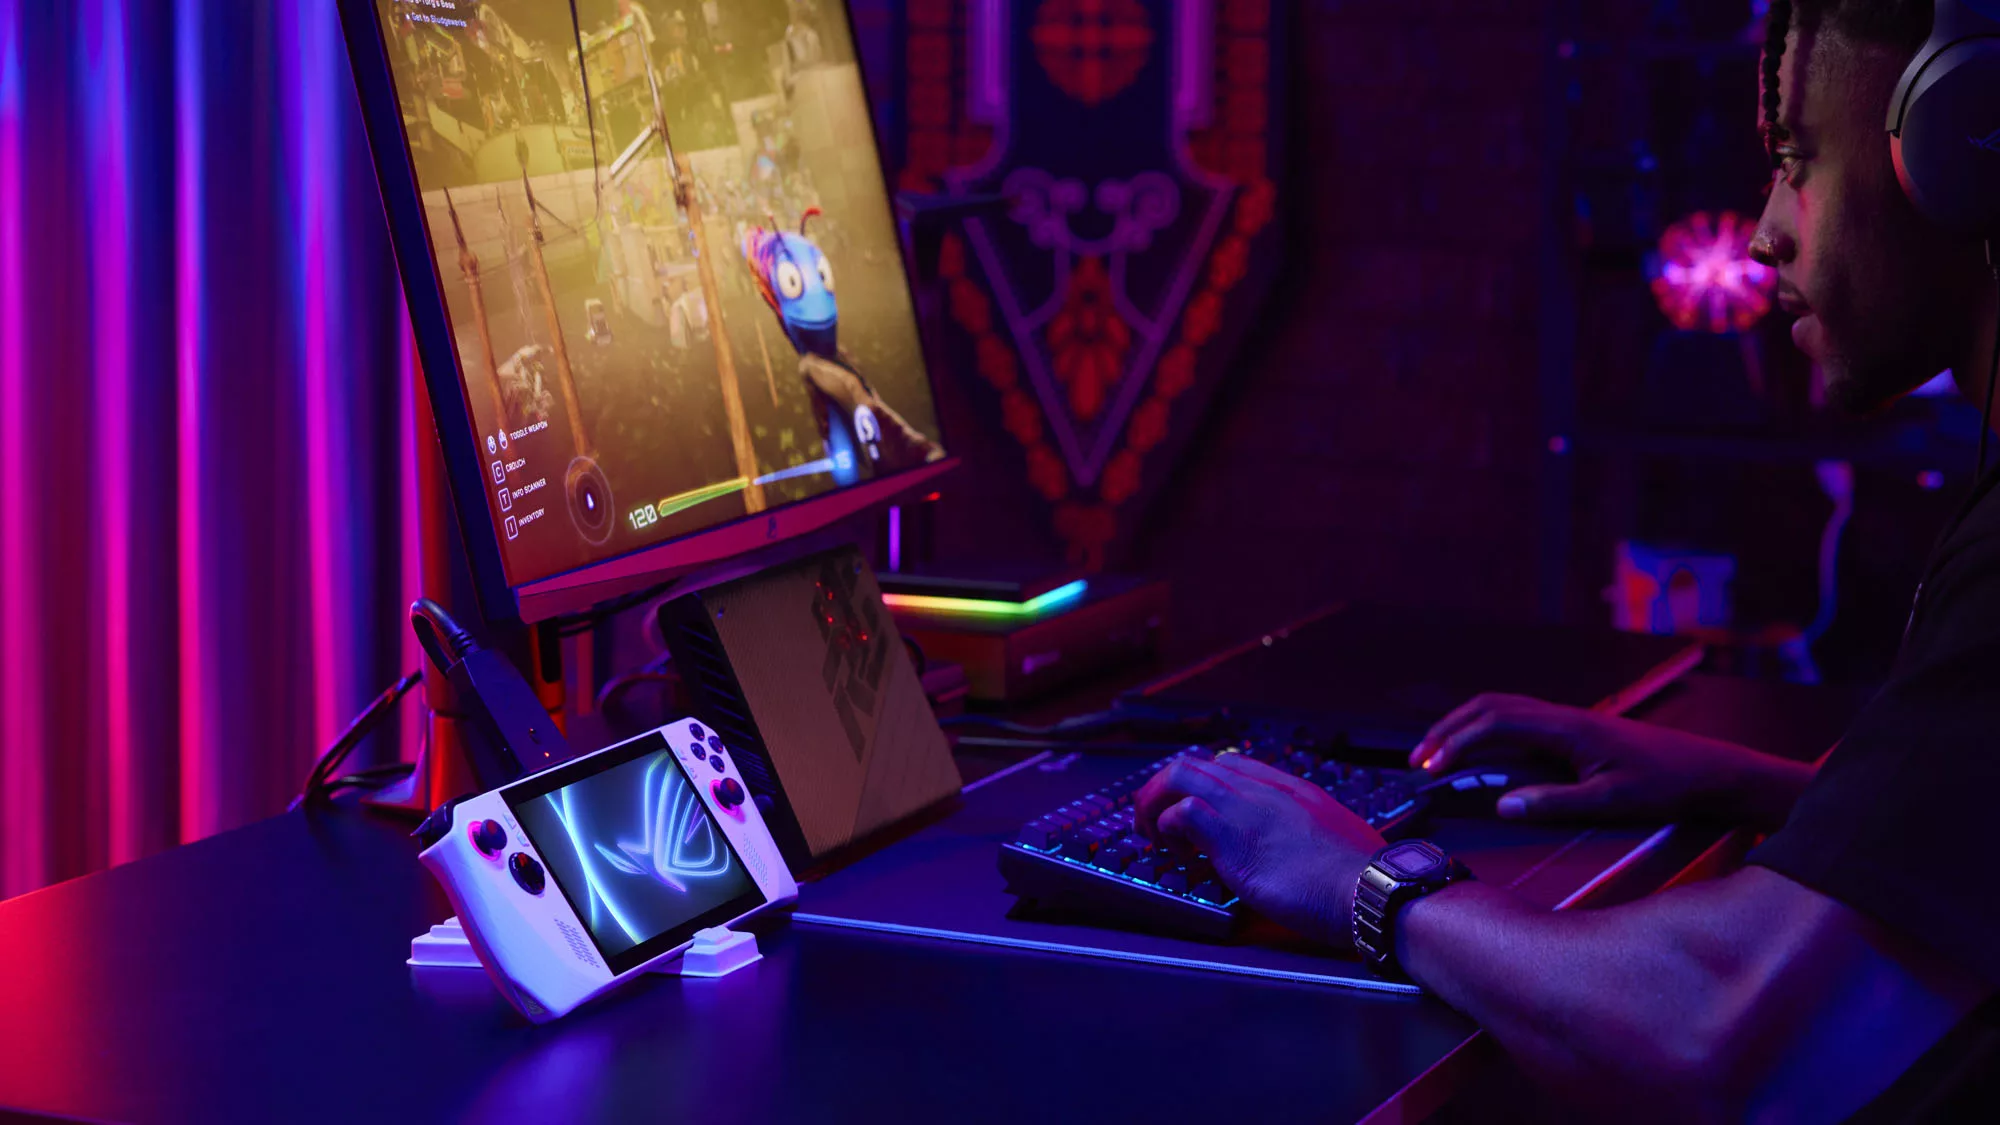 Скриншот: мужчина в темной комнате играет в видеоигры с монитором, мышью и клавиатурой, подключенными к внешнему графическому процессору ROG Ally и XG Mobile.